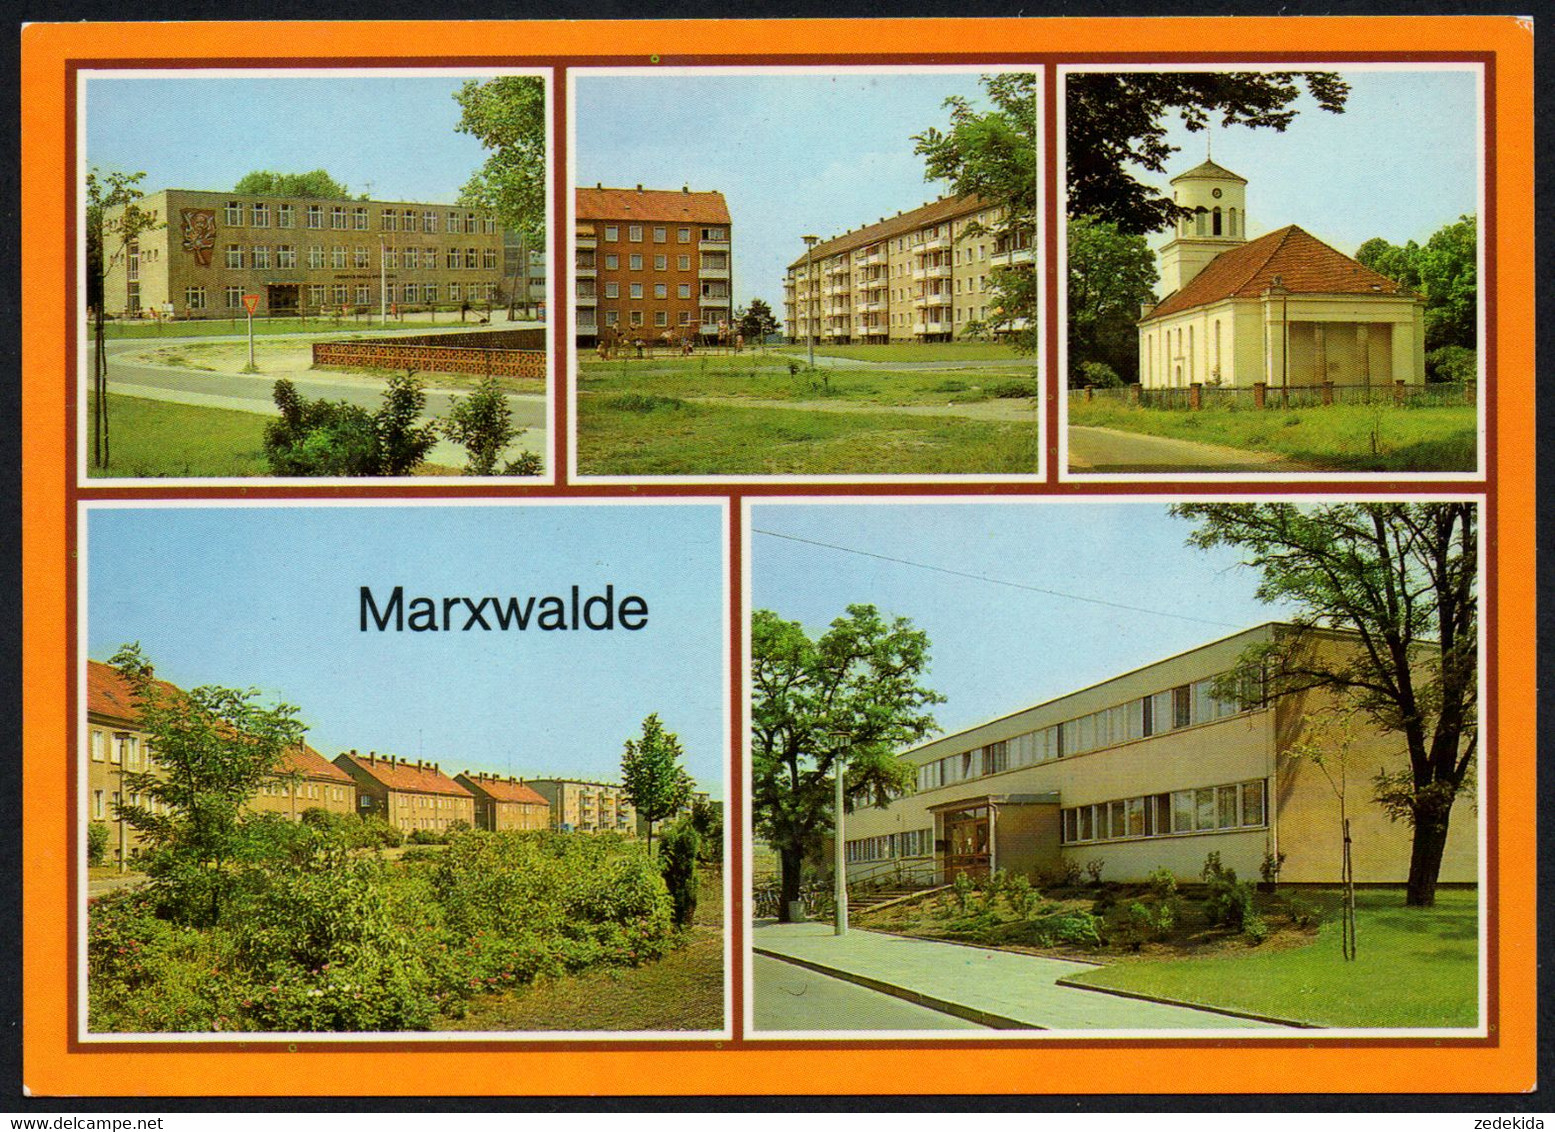 E7548 - TOP Marxwalde - Neubauten Architektur - Bild Und Heimat Reichenbach - Seelow